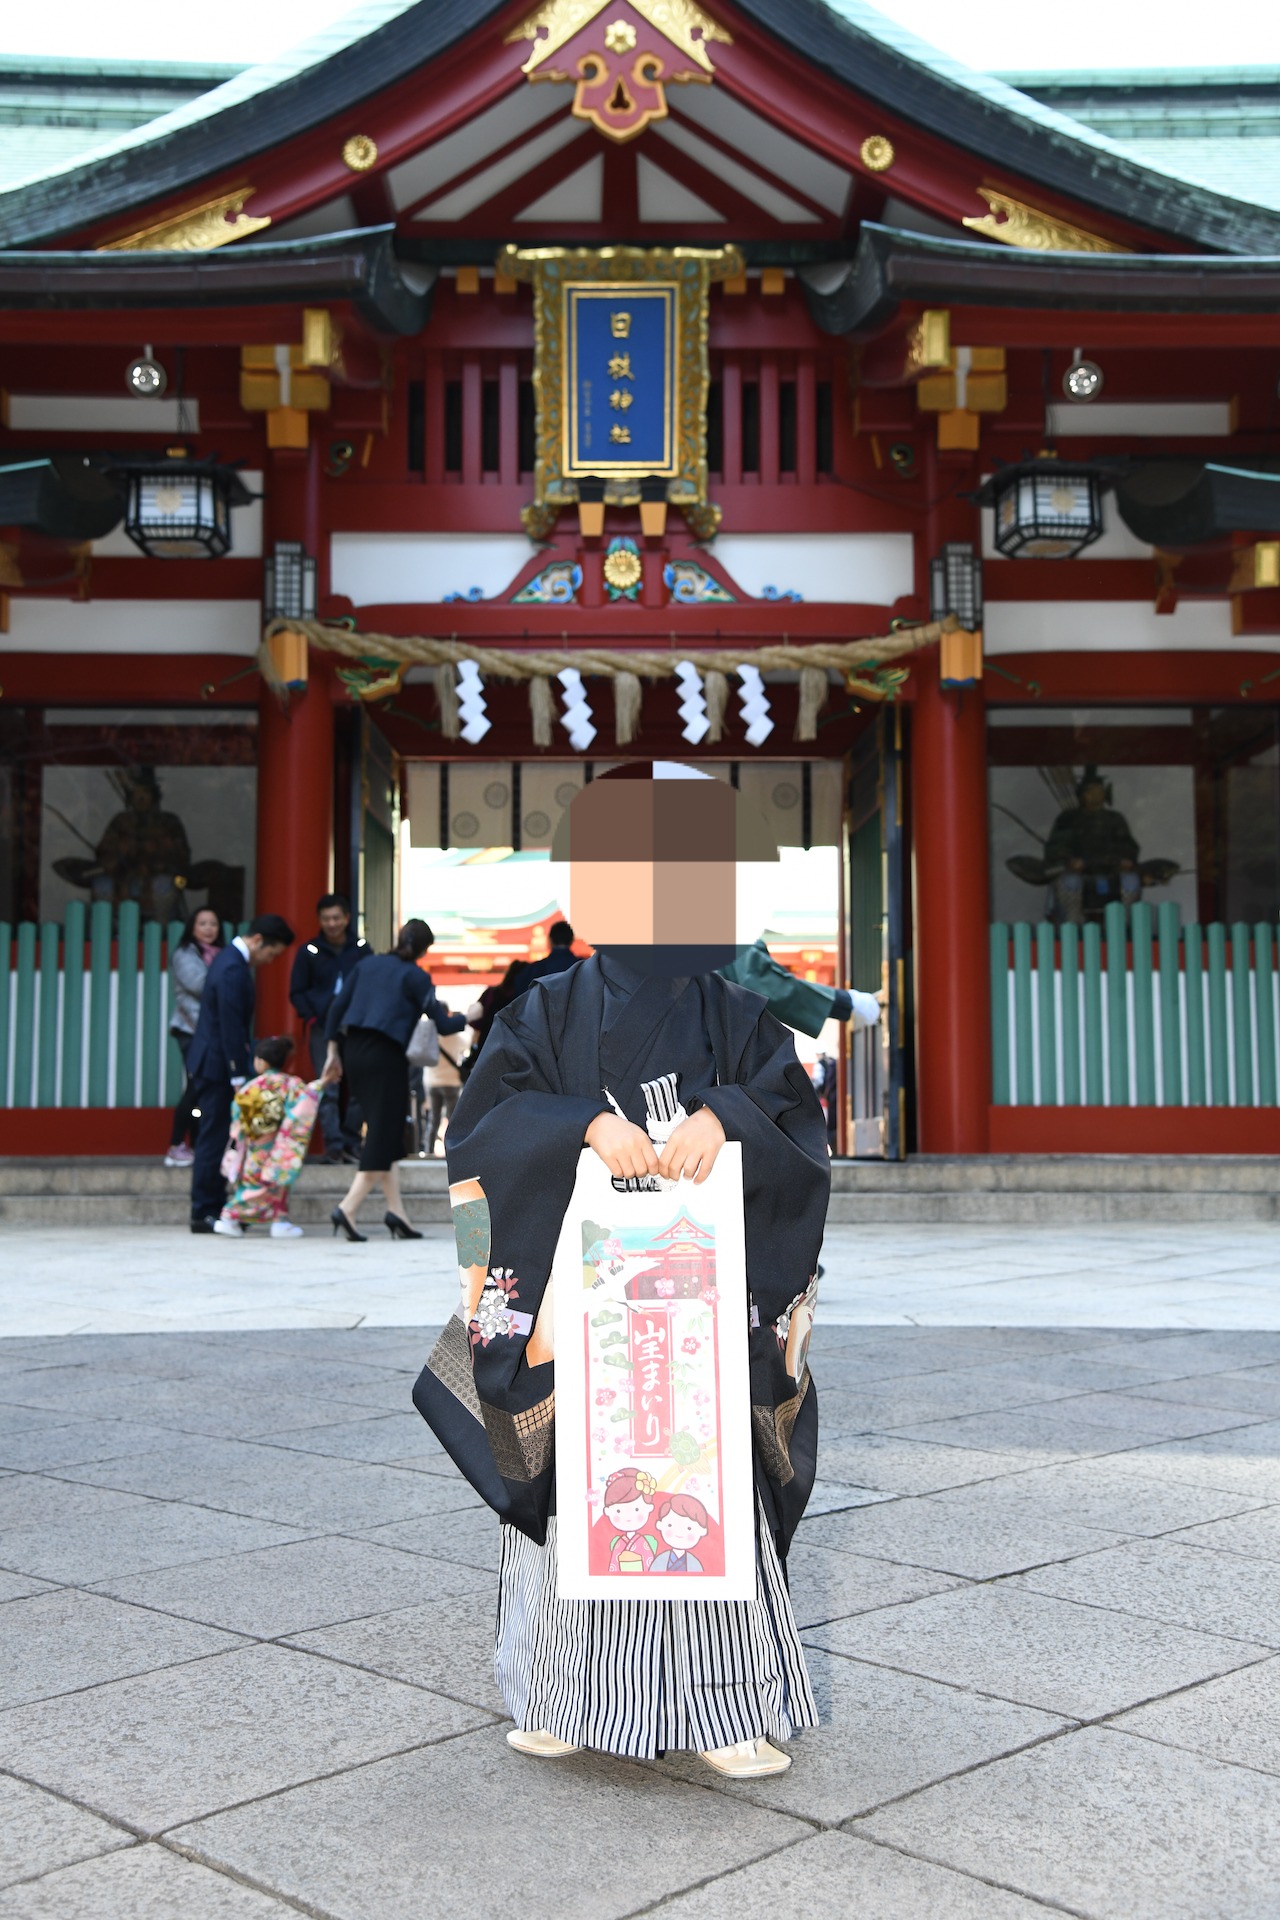 体験談 ウルトラマンがもらえる赤坂日枝神社での七五三 11月の混雑状況や豪華なお祝い品をご紹介 もやチャレ